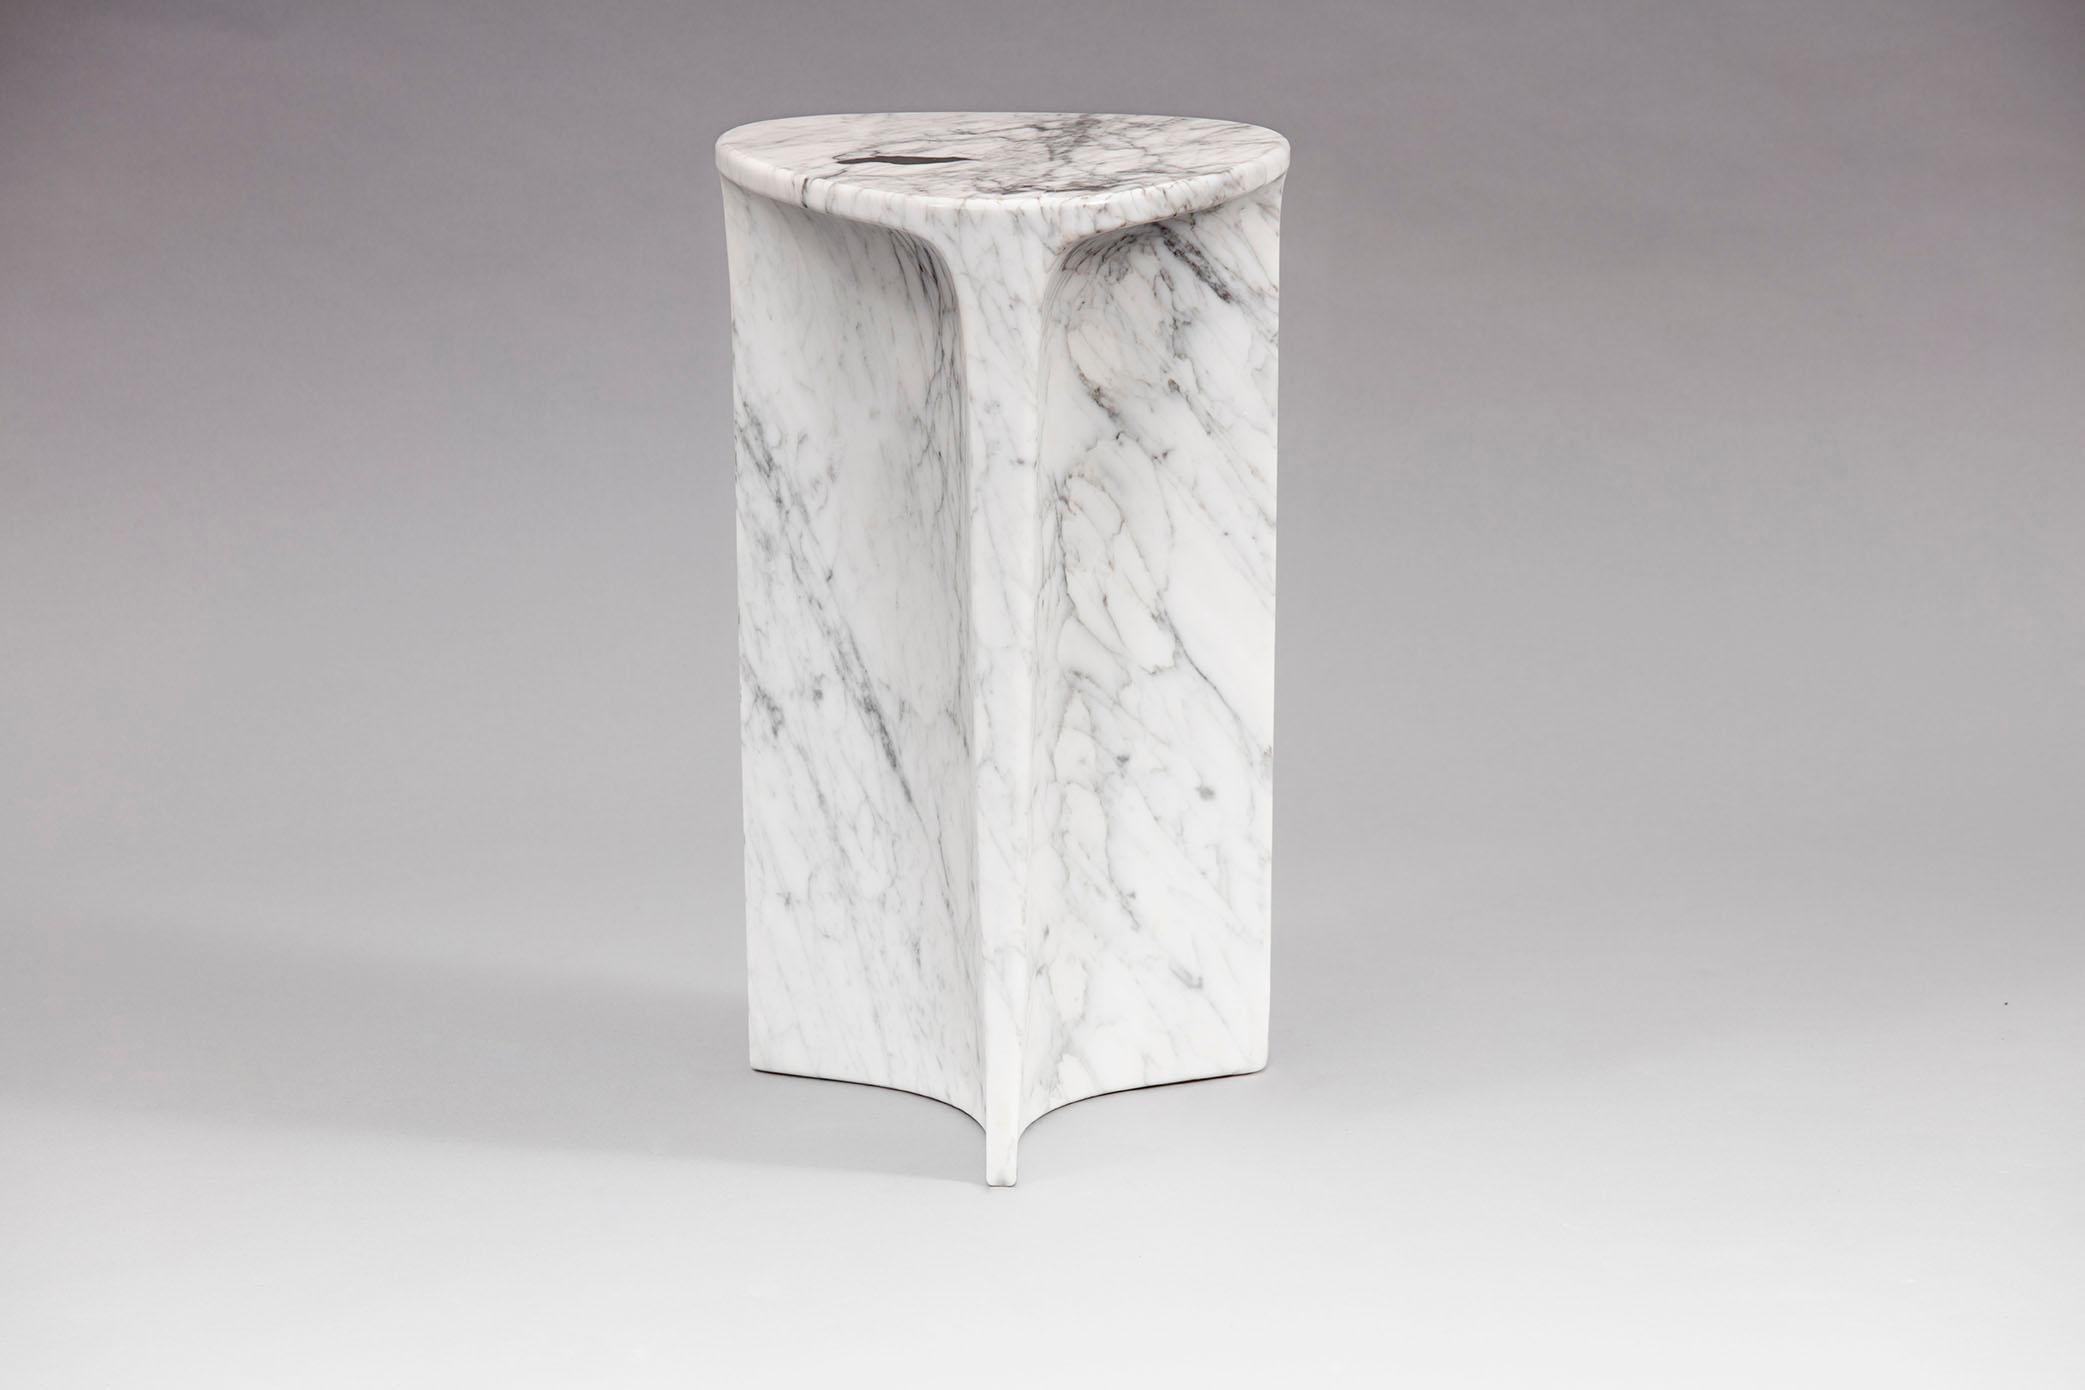 Carv Beistelltisch ist aus einem einzigen Block italienischen Orobico-Marmors geschnitten.
Wesentliches und organisches Design, das auf natürliche Weise eine flache, fließende Tischplatte schafft
zu einem Y-förmigen Fuß, der die Adern des Steins